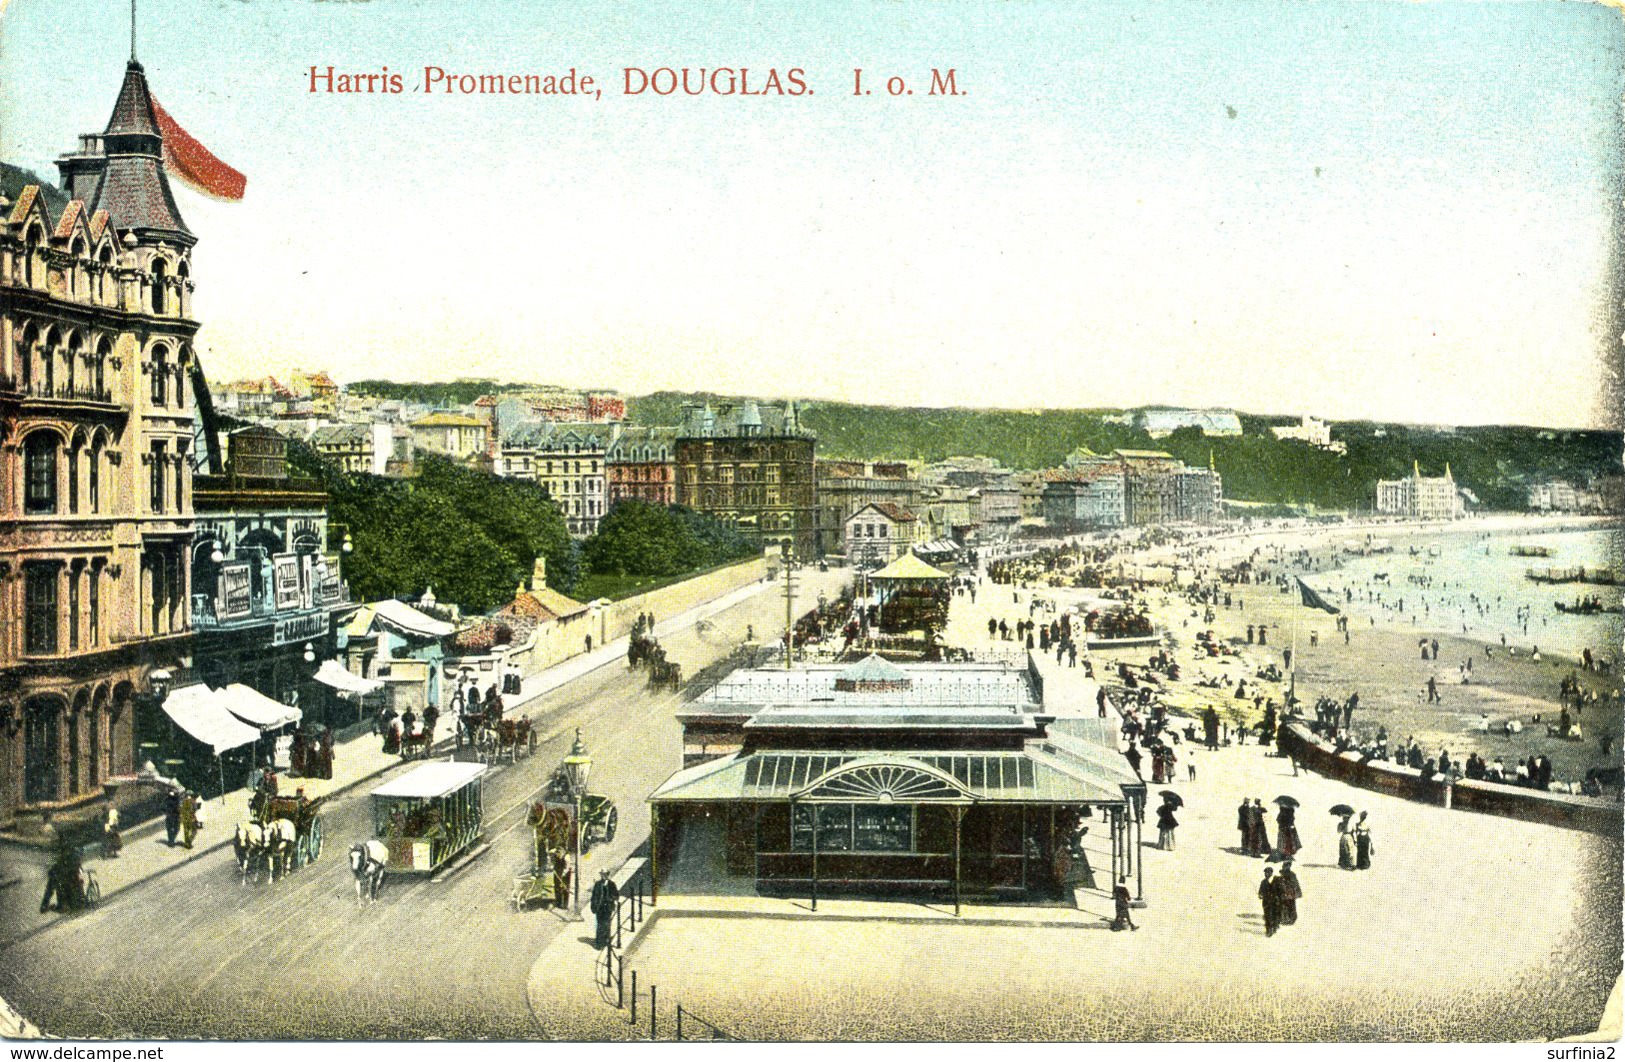 IOM - DOUGLAS - HARRIS PROMENADE 1907  Iom226 - Isle Of Man